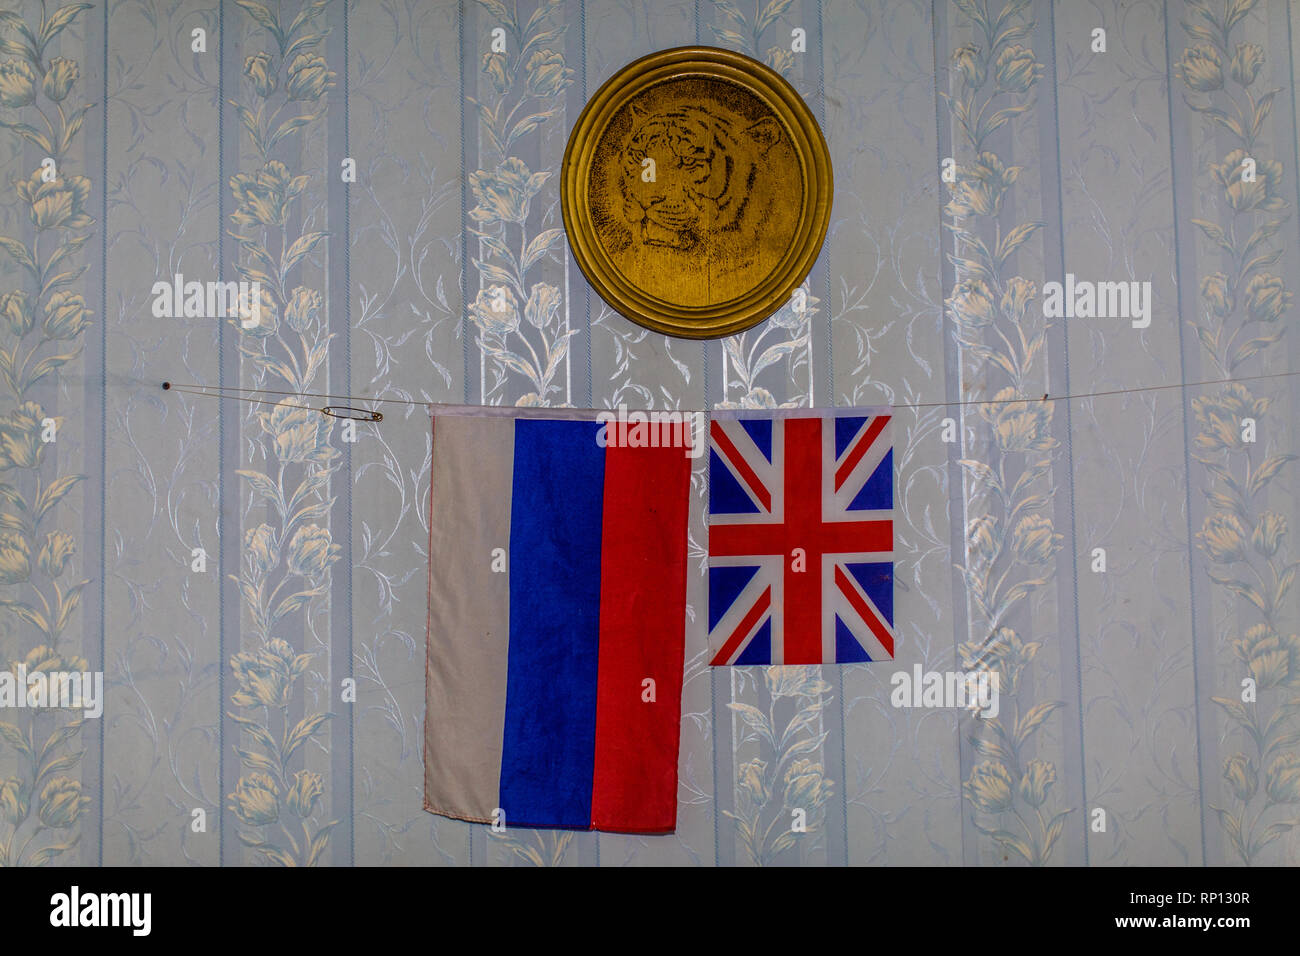 Die beiden Flaggen von Großbritannien und Russland hängen unter einer goldenen Platte mit sibirischem Tiger in der Mitte. Stockfoto